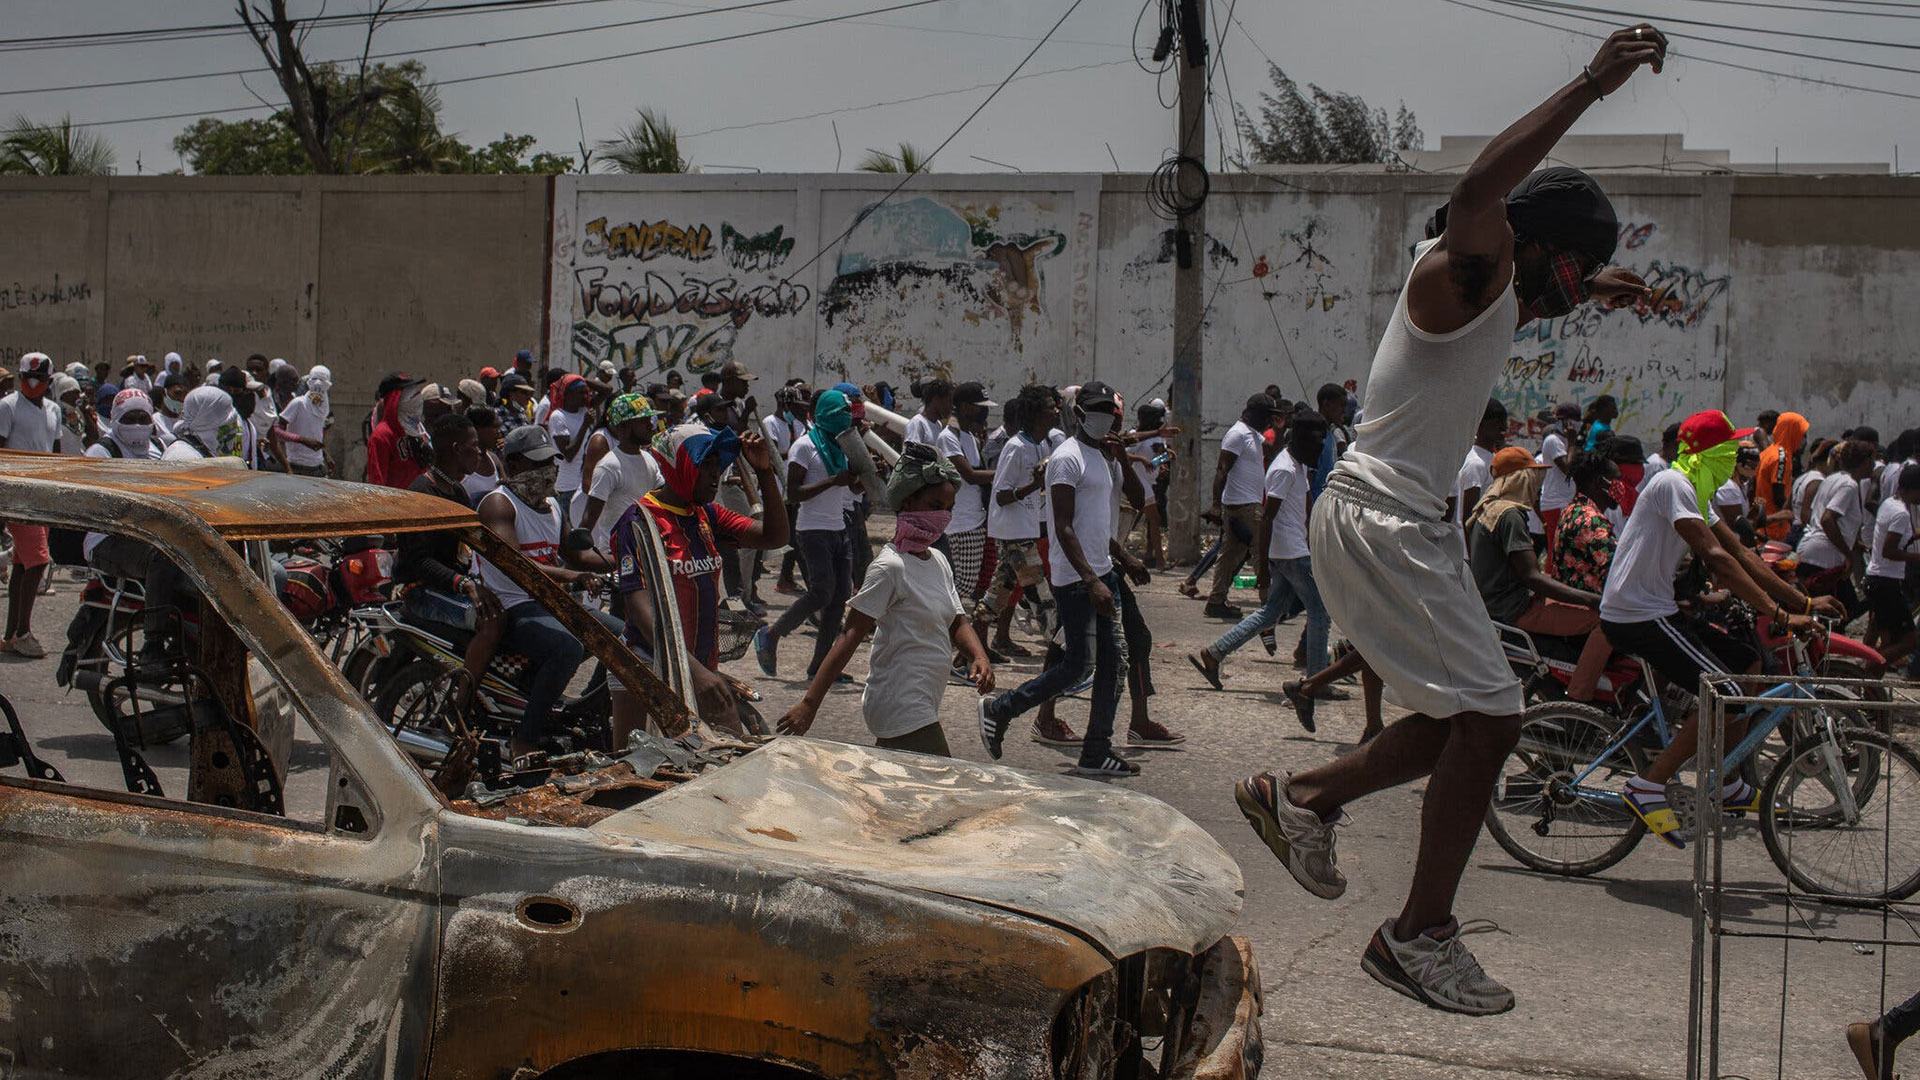 Los miembros de la pandilla G9 protestaban pacíficamente en julio en Puerto Príncipe, Haití, por el asesinato del presidente Jovenel Moïse (Victor Moriyama para The New York Times)